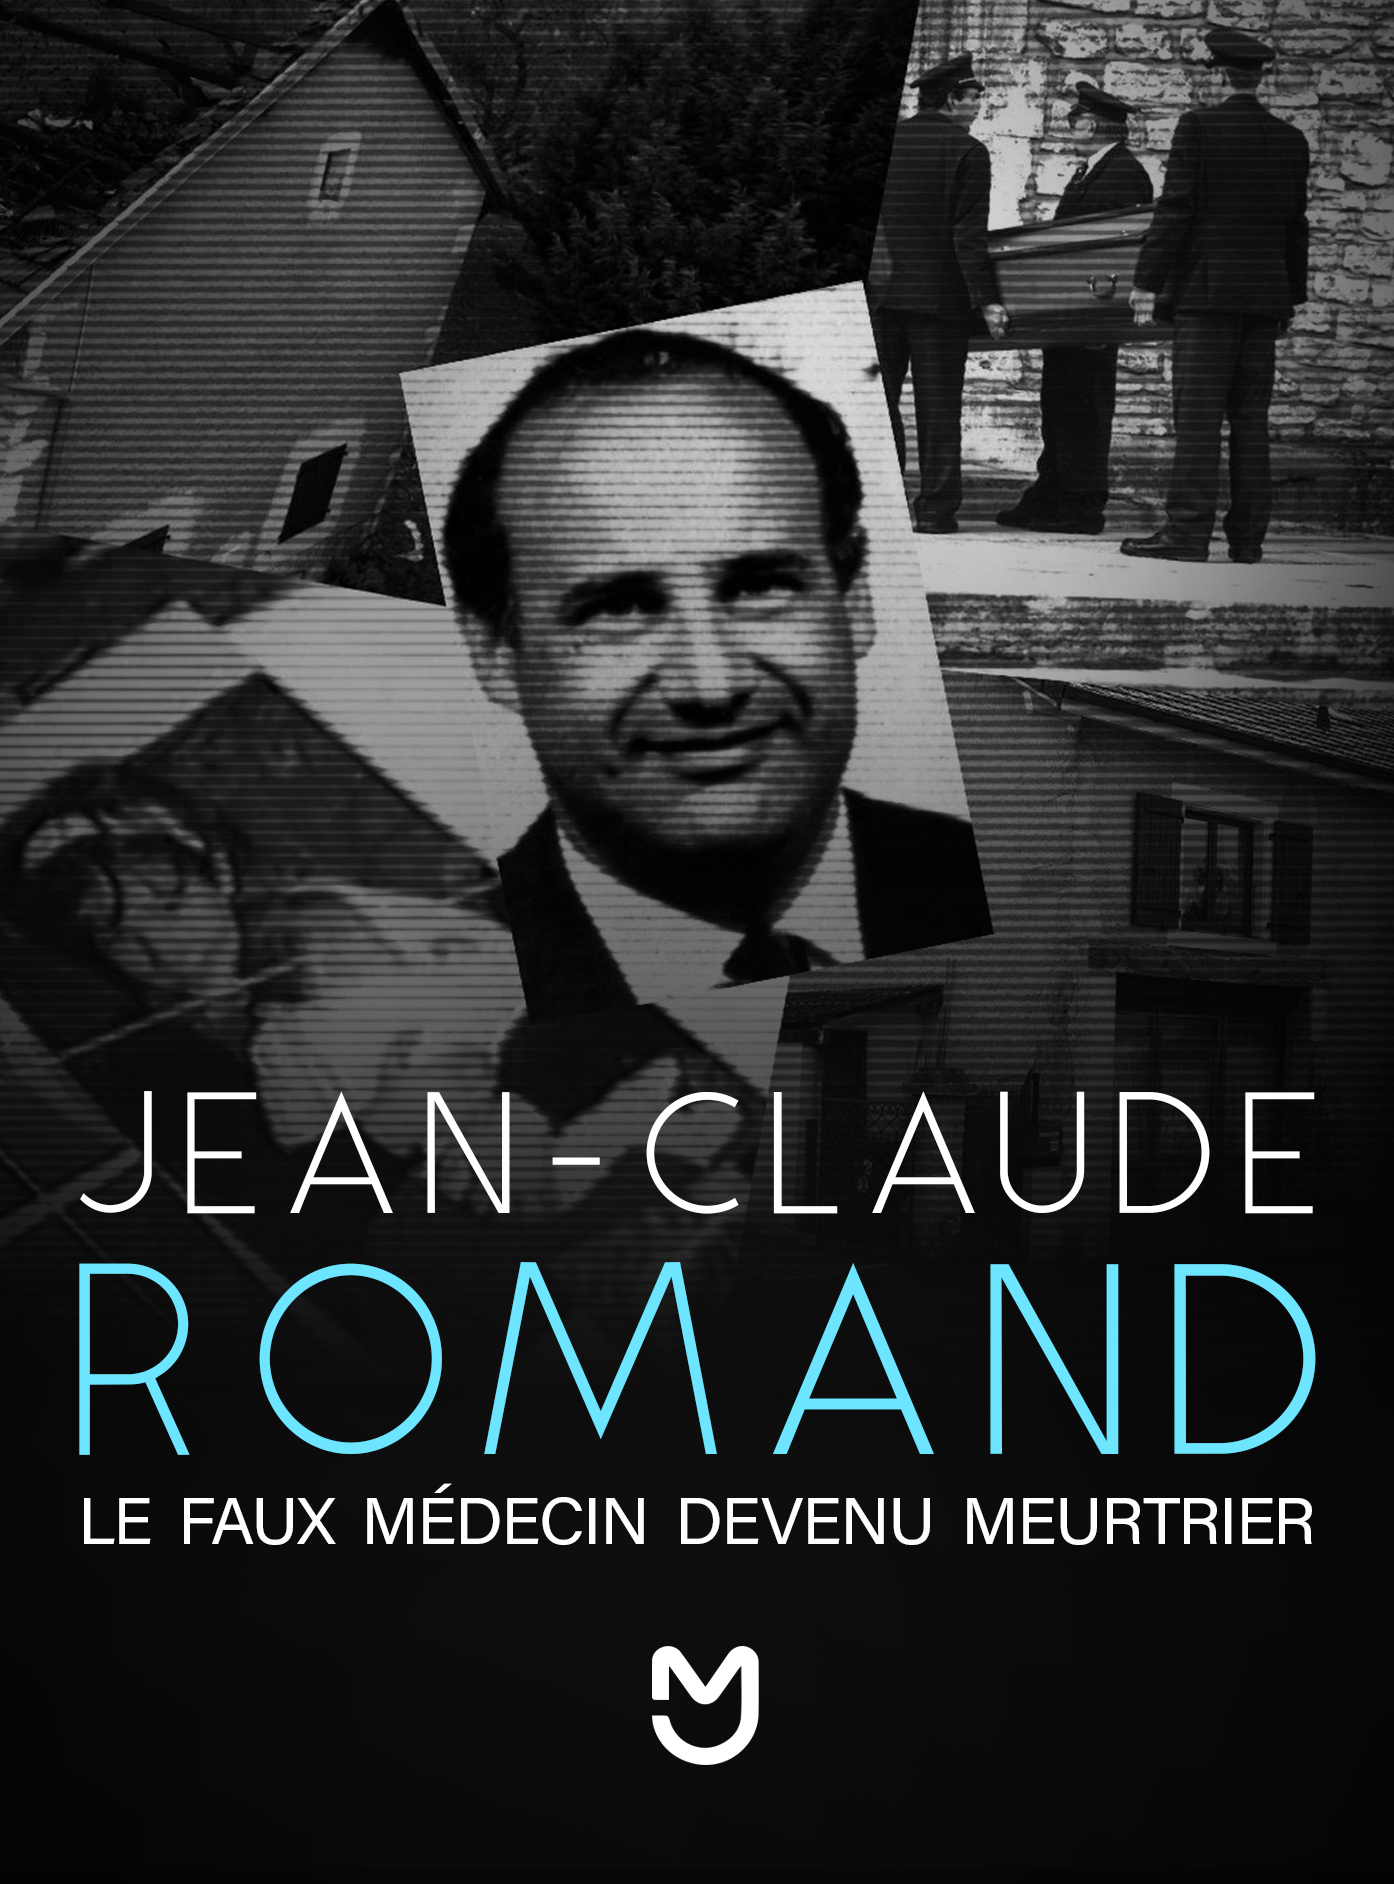 Jean-Claude Romand, le faux médecin devenu meurtrier